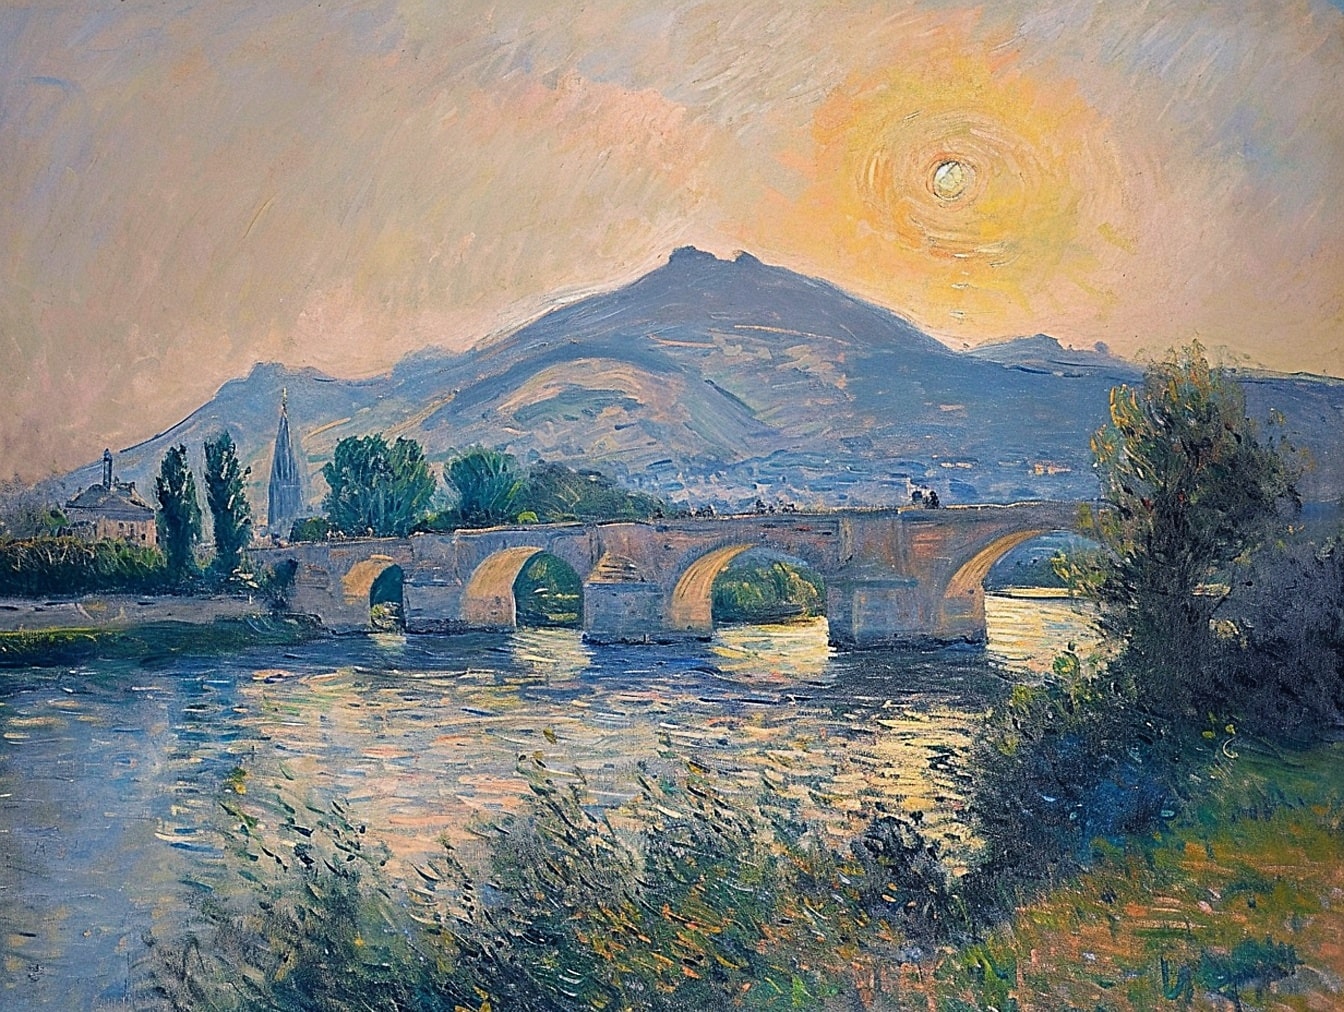 Картина олійними фарбами старого кам’яного мосту через річку із заходом сонця над пагорбами на задньому плані